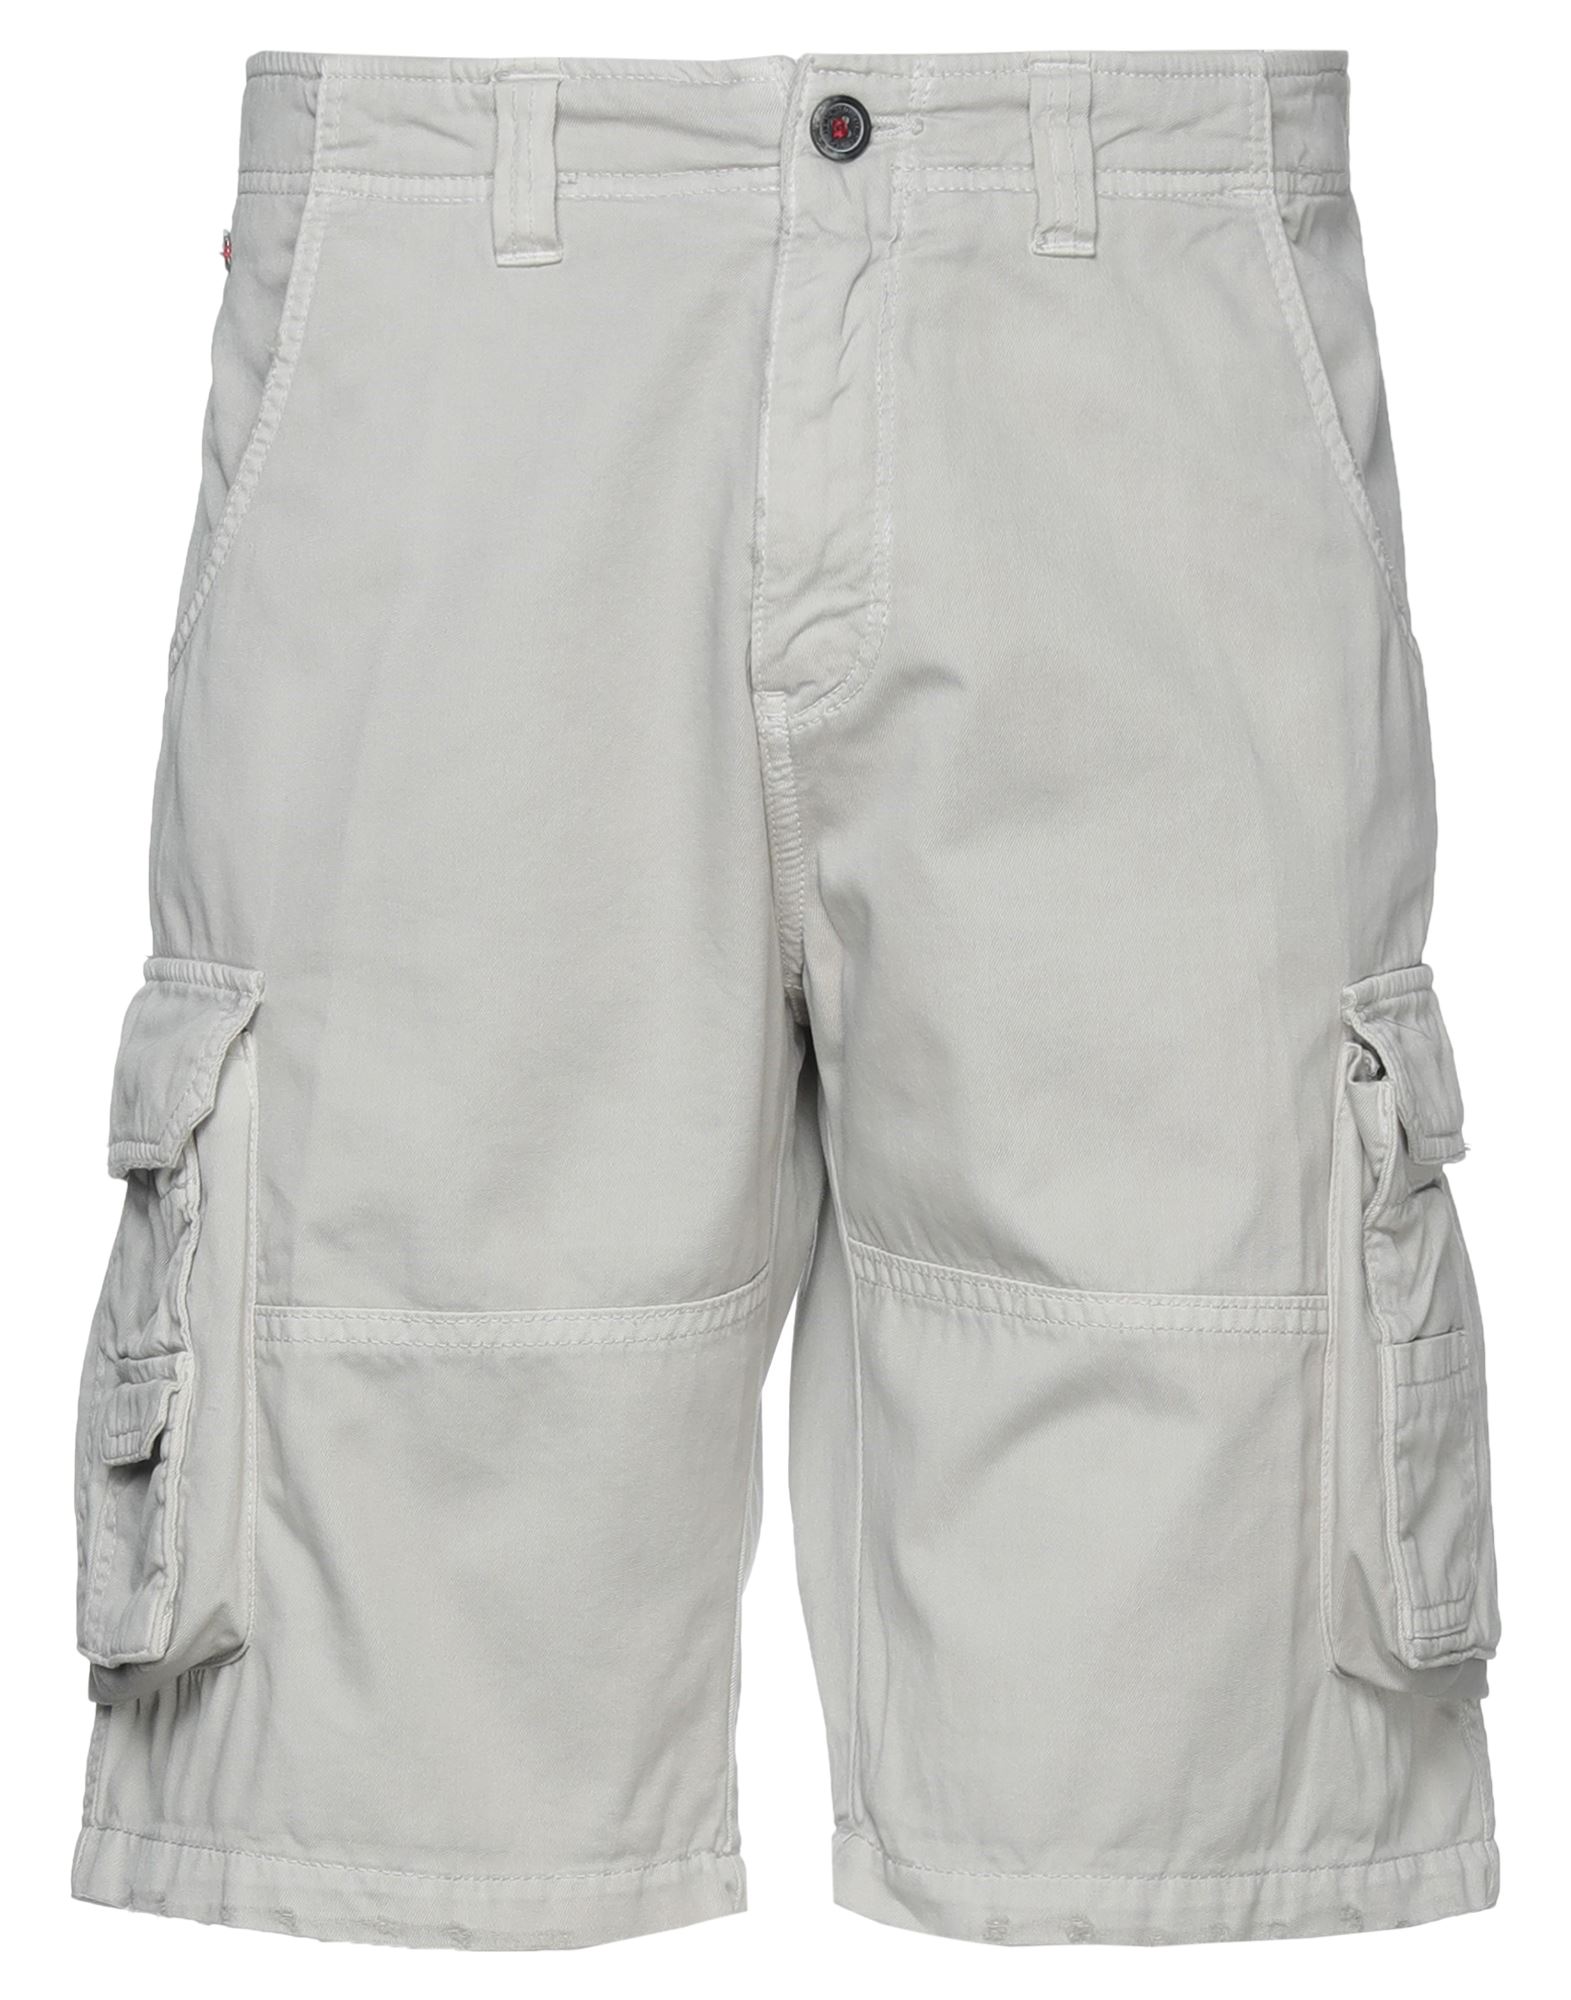 HOMEWARD CLOTHES Shorts & Bermuda Shorts | Smart Closet